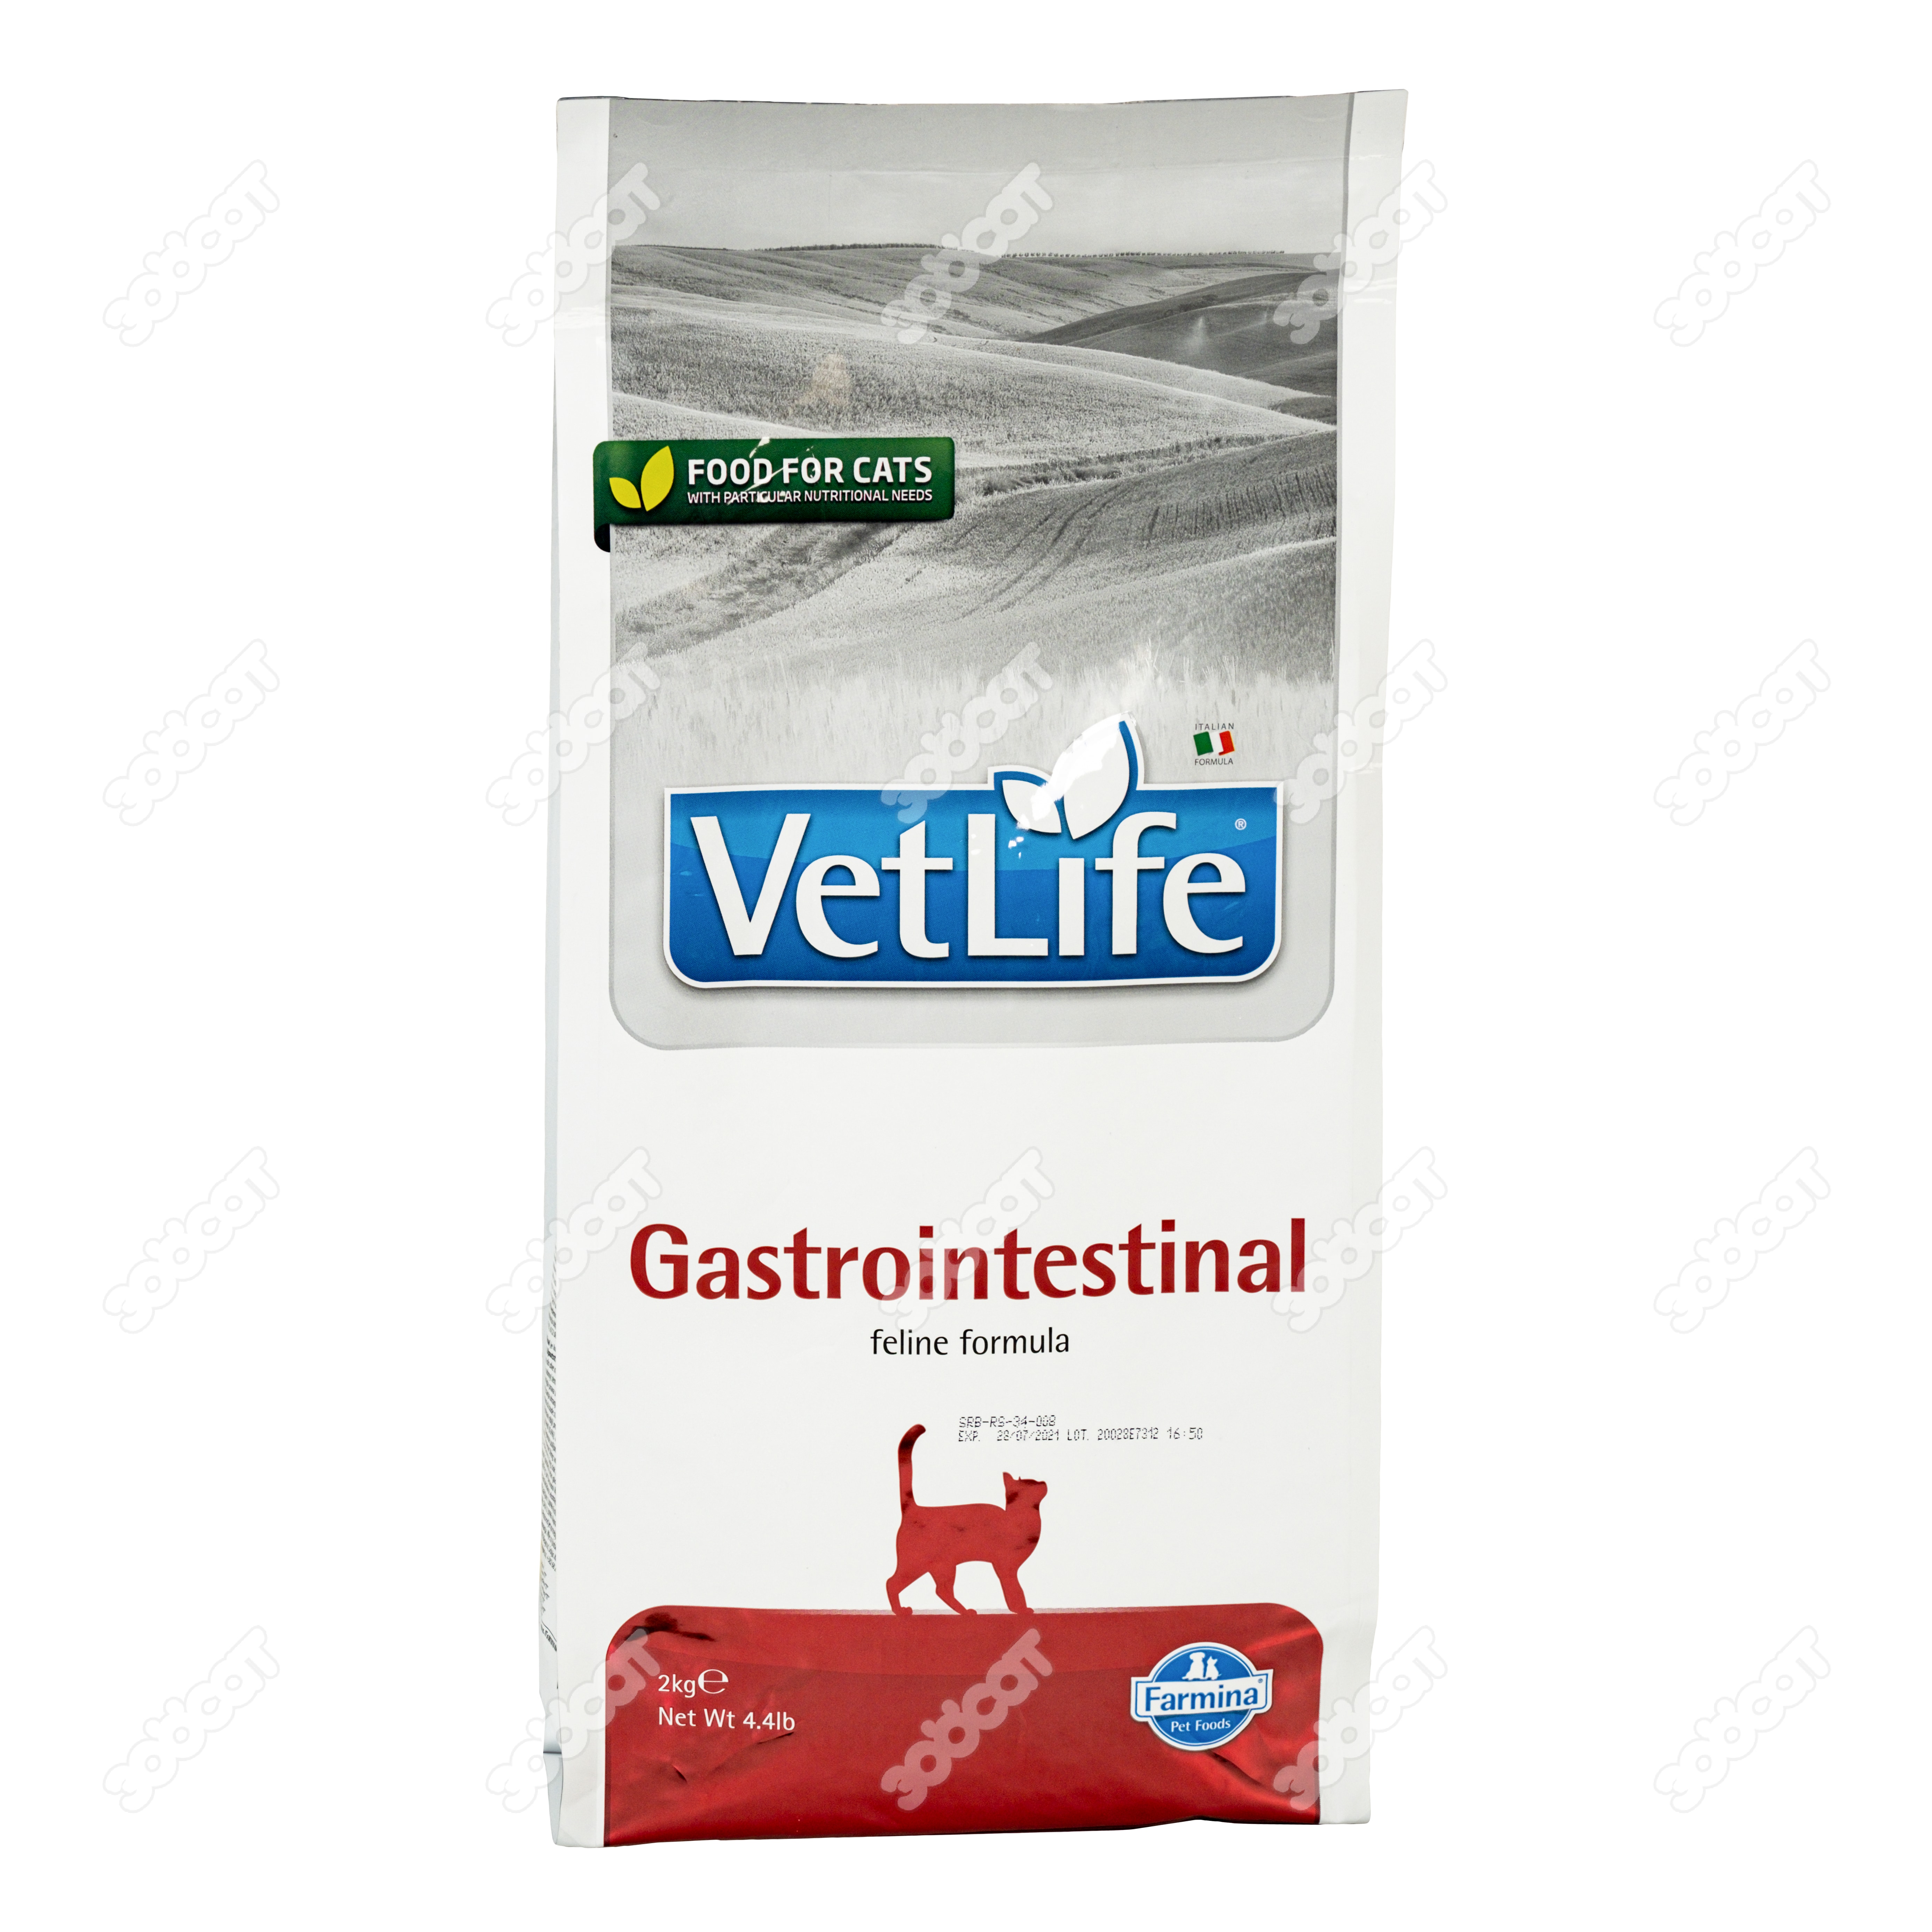 Farmina gastrointestinal для кошек. Vet Life Gastrointestinal корм для кошек. Farmina vet Life Gastro intestinal для кошек сухой. Гастроинтестинал Фармина для кошек. Фармина Gastrointestinal для кошек новая упаковка.